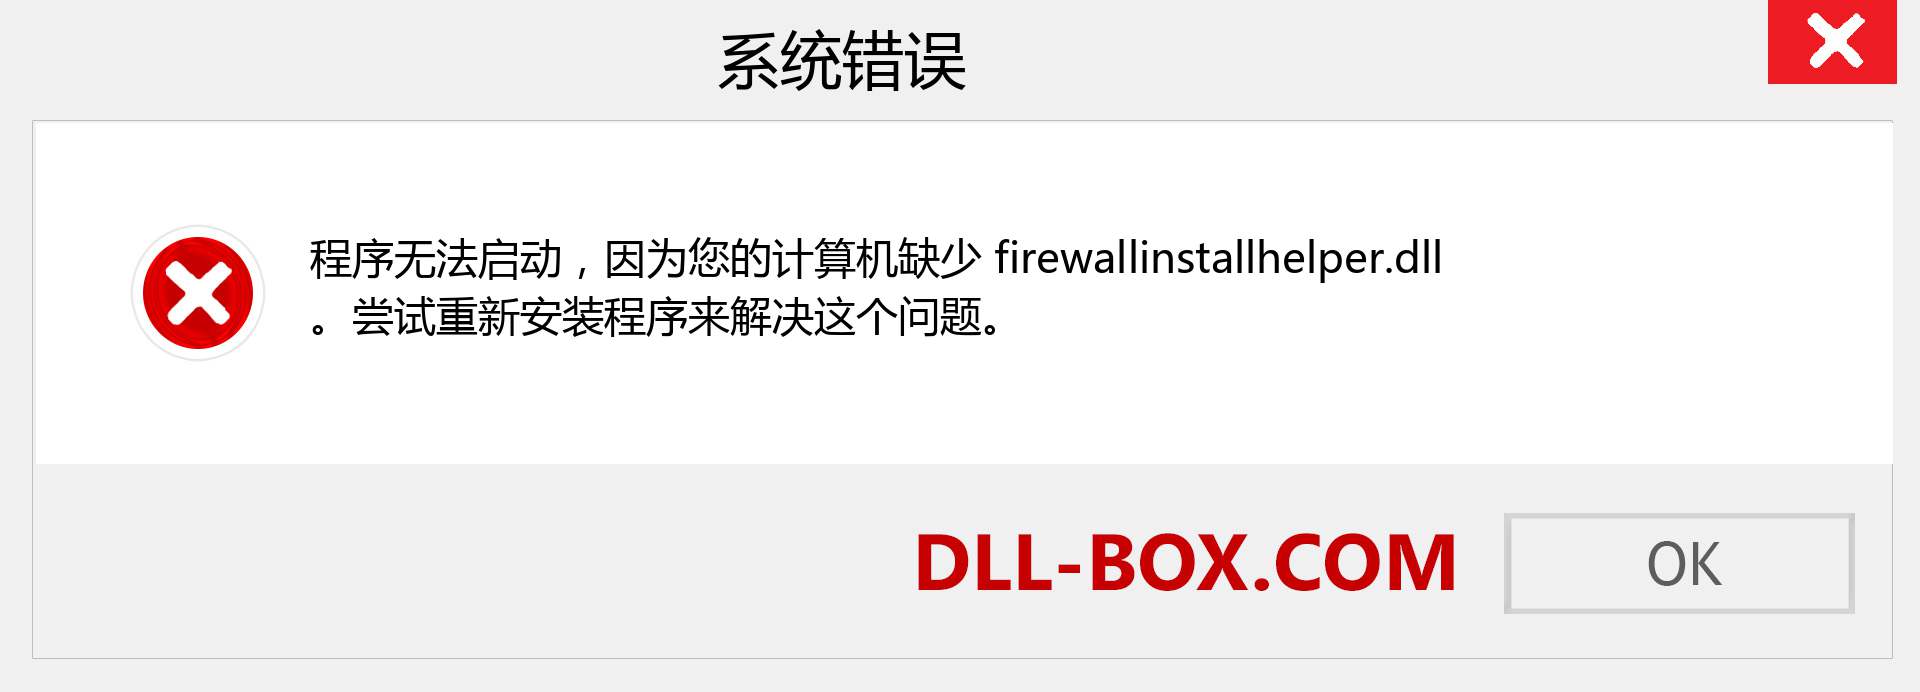 firewallinstallhelper.dll 文件丢失？。 适用于 Windows 7、8、10 的下载 - 修复 Windows、照片、图像上的 firewallinstallhelper dll 丢失错误